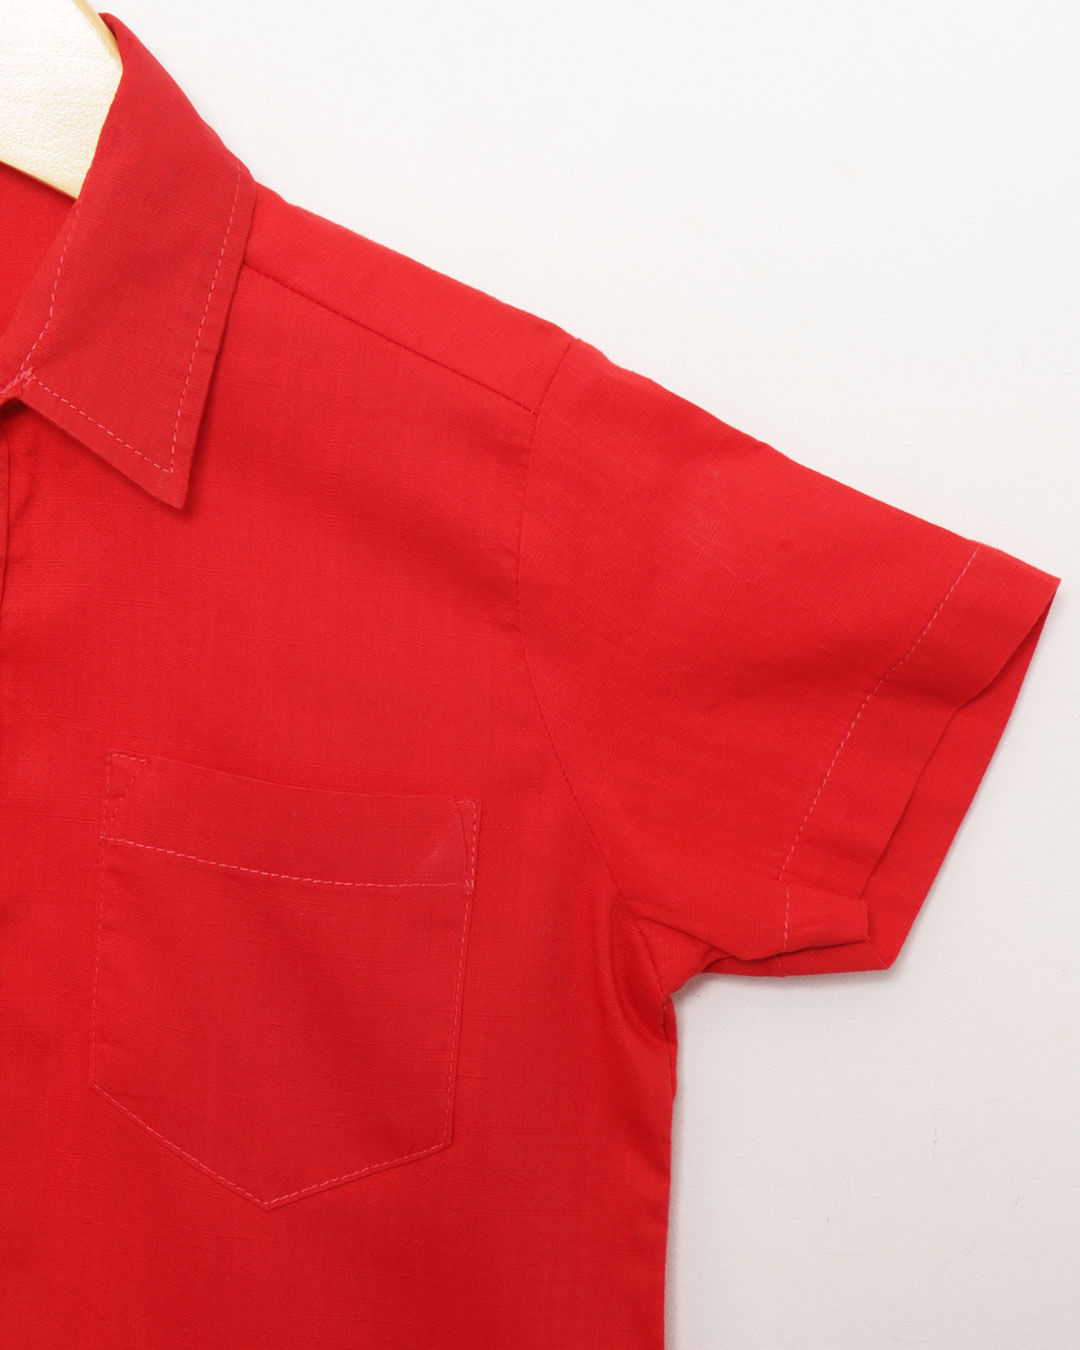 Camisa-Mc-Alglisa-Vermelha-13---Vermelho-Escuro